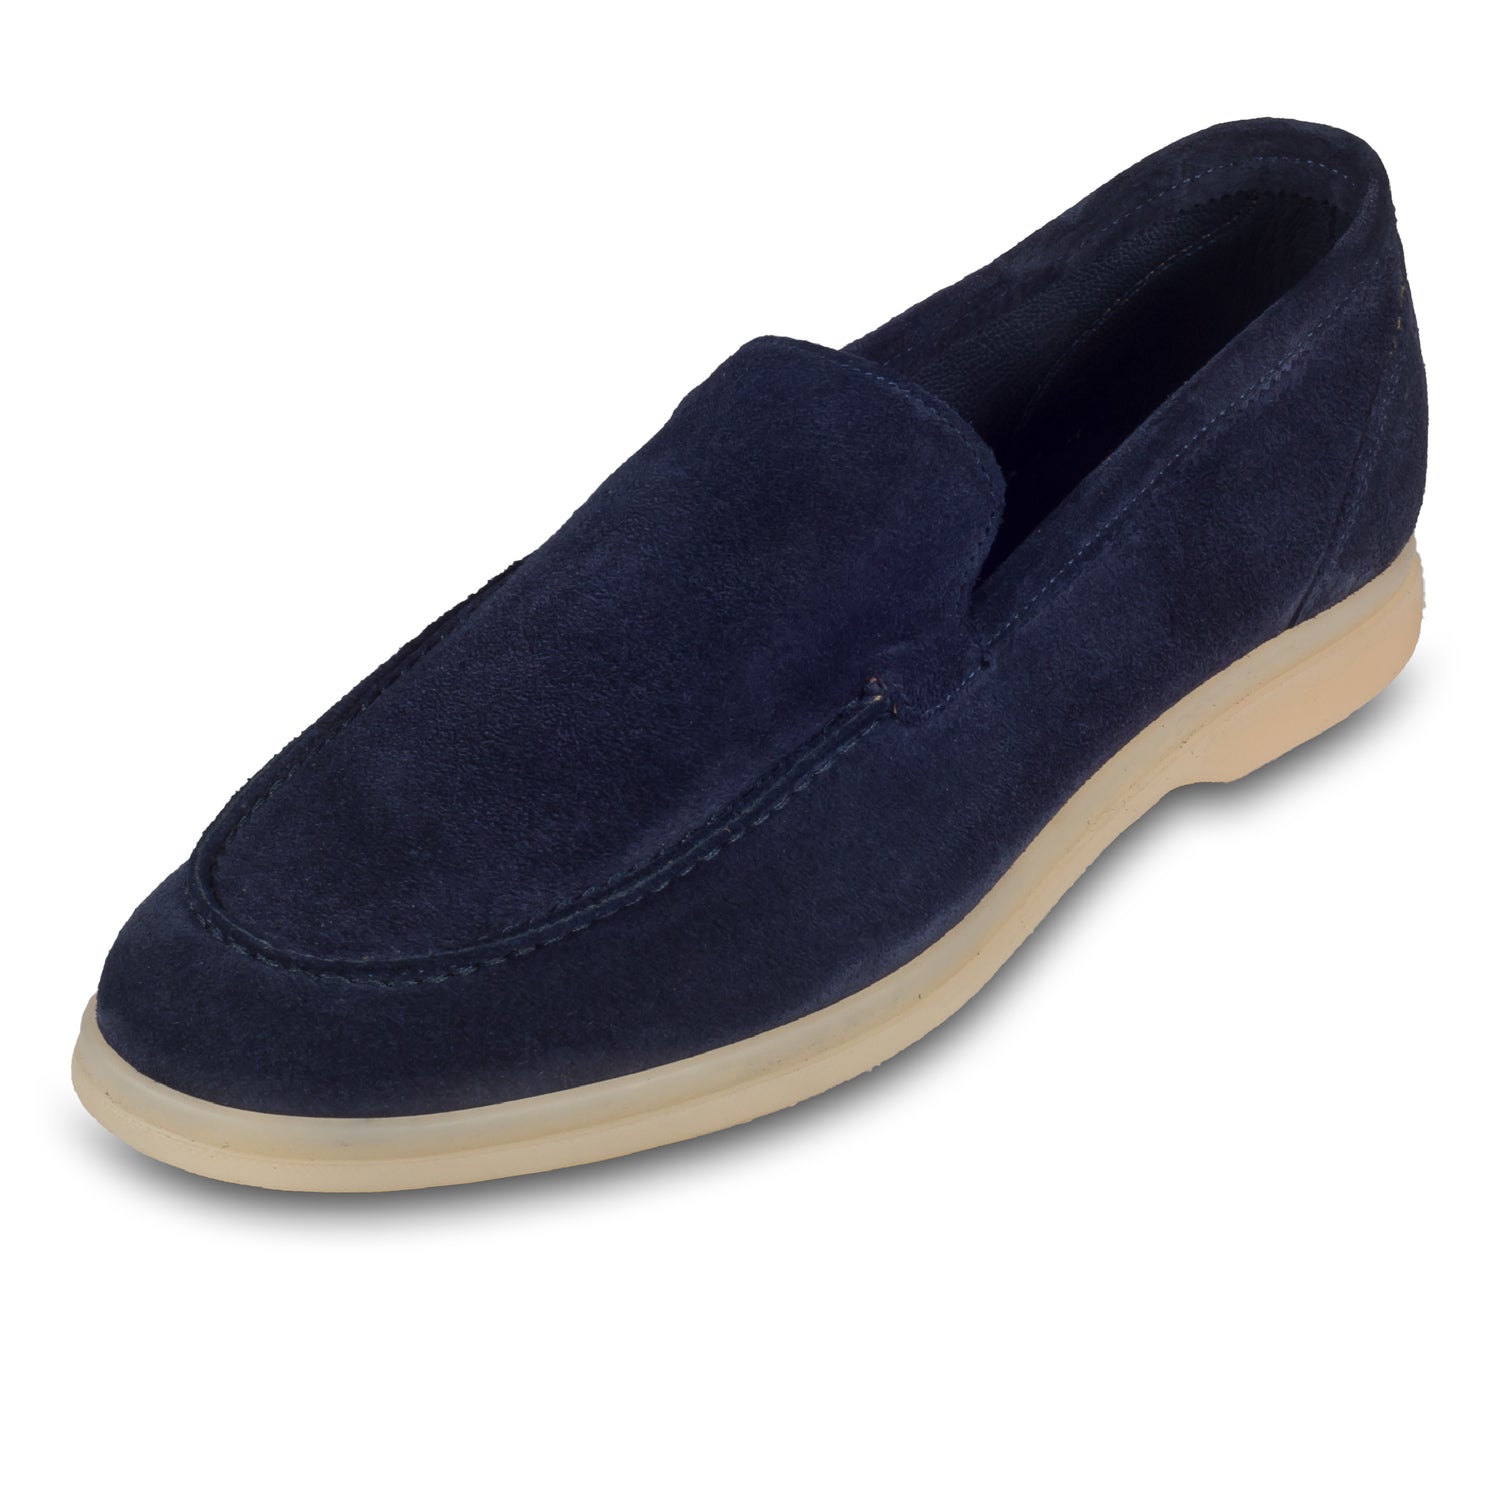 Brecos Italienische Herren-Loafer aus weichem Veloursleder in blau. Mit leichter Gummisohle.  Handgefertigt in Italien. Schräge Ansicht linker Schuh.